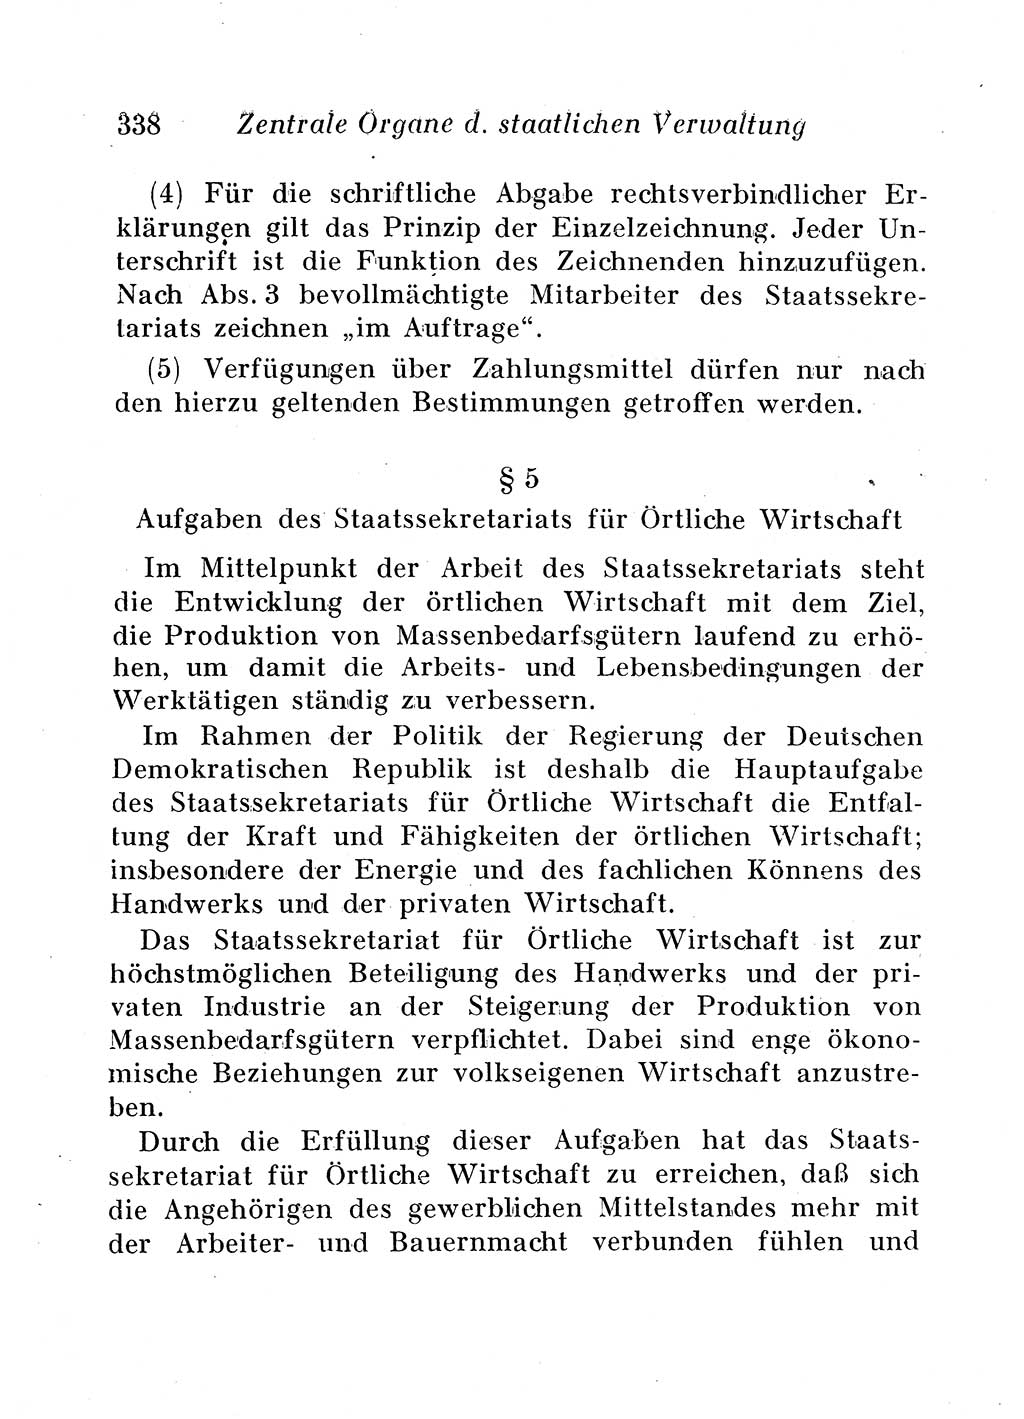 Staats- und verwaltungsrechtliche Gesetze der Deutschen Demokratischen Republik (DDR) 1958, Seite 338 (StVerwR Ges. DDR 1958, S. 338)